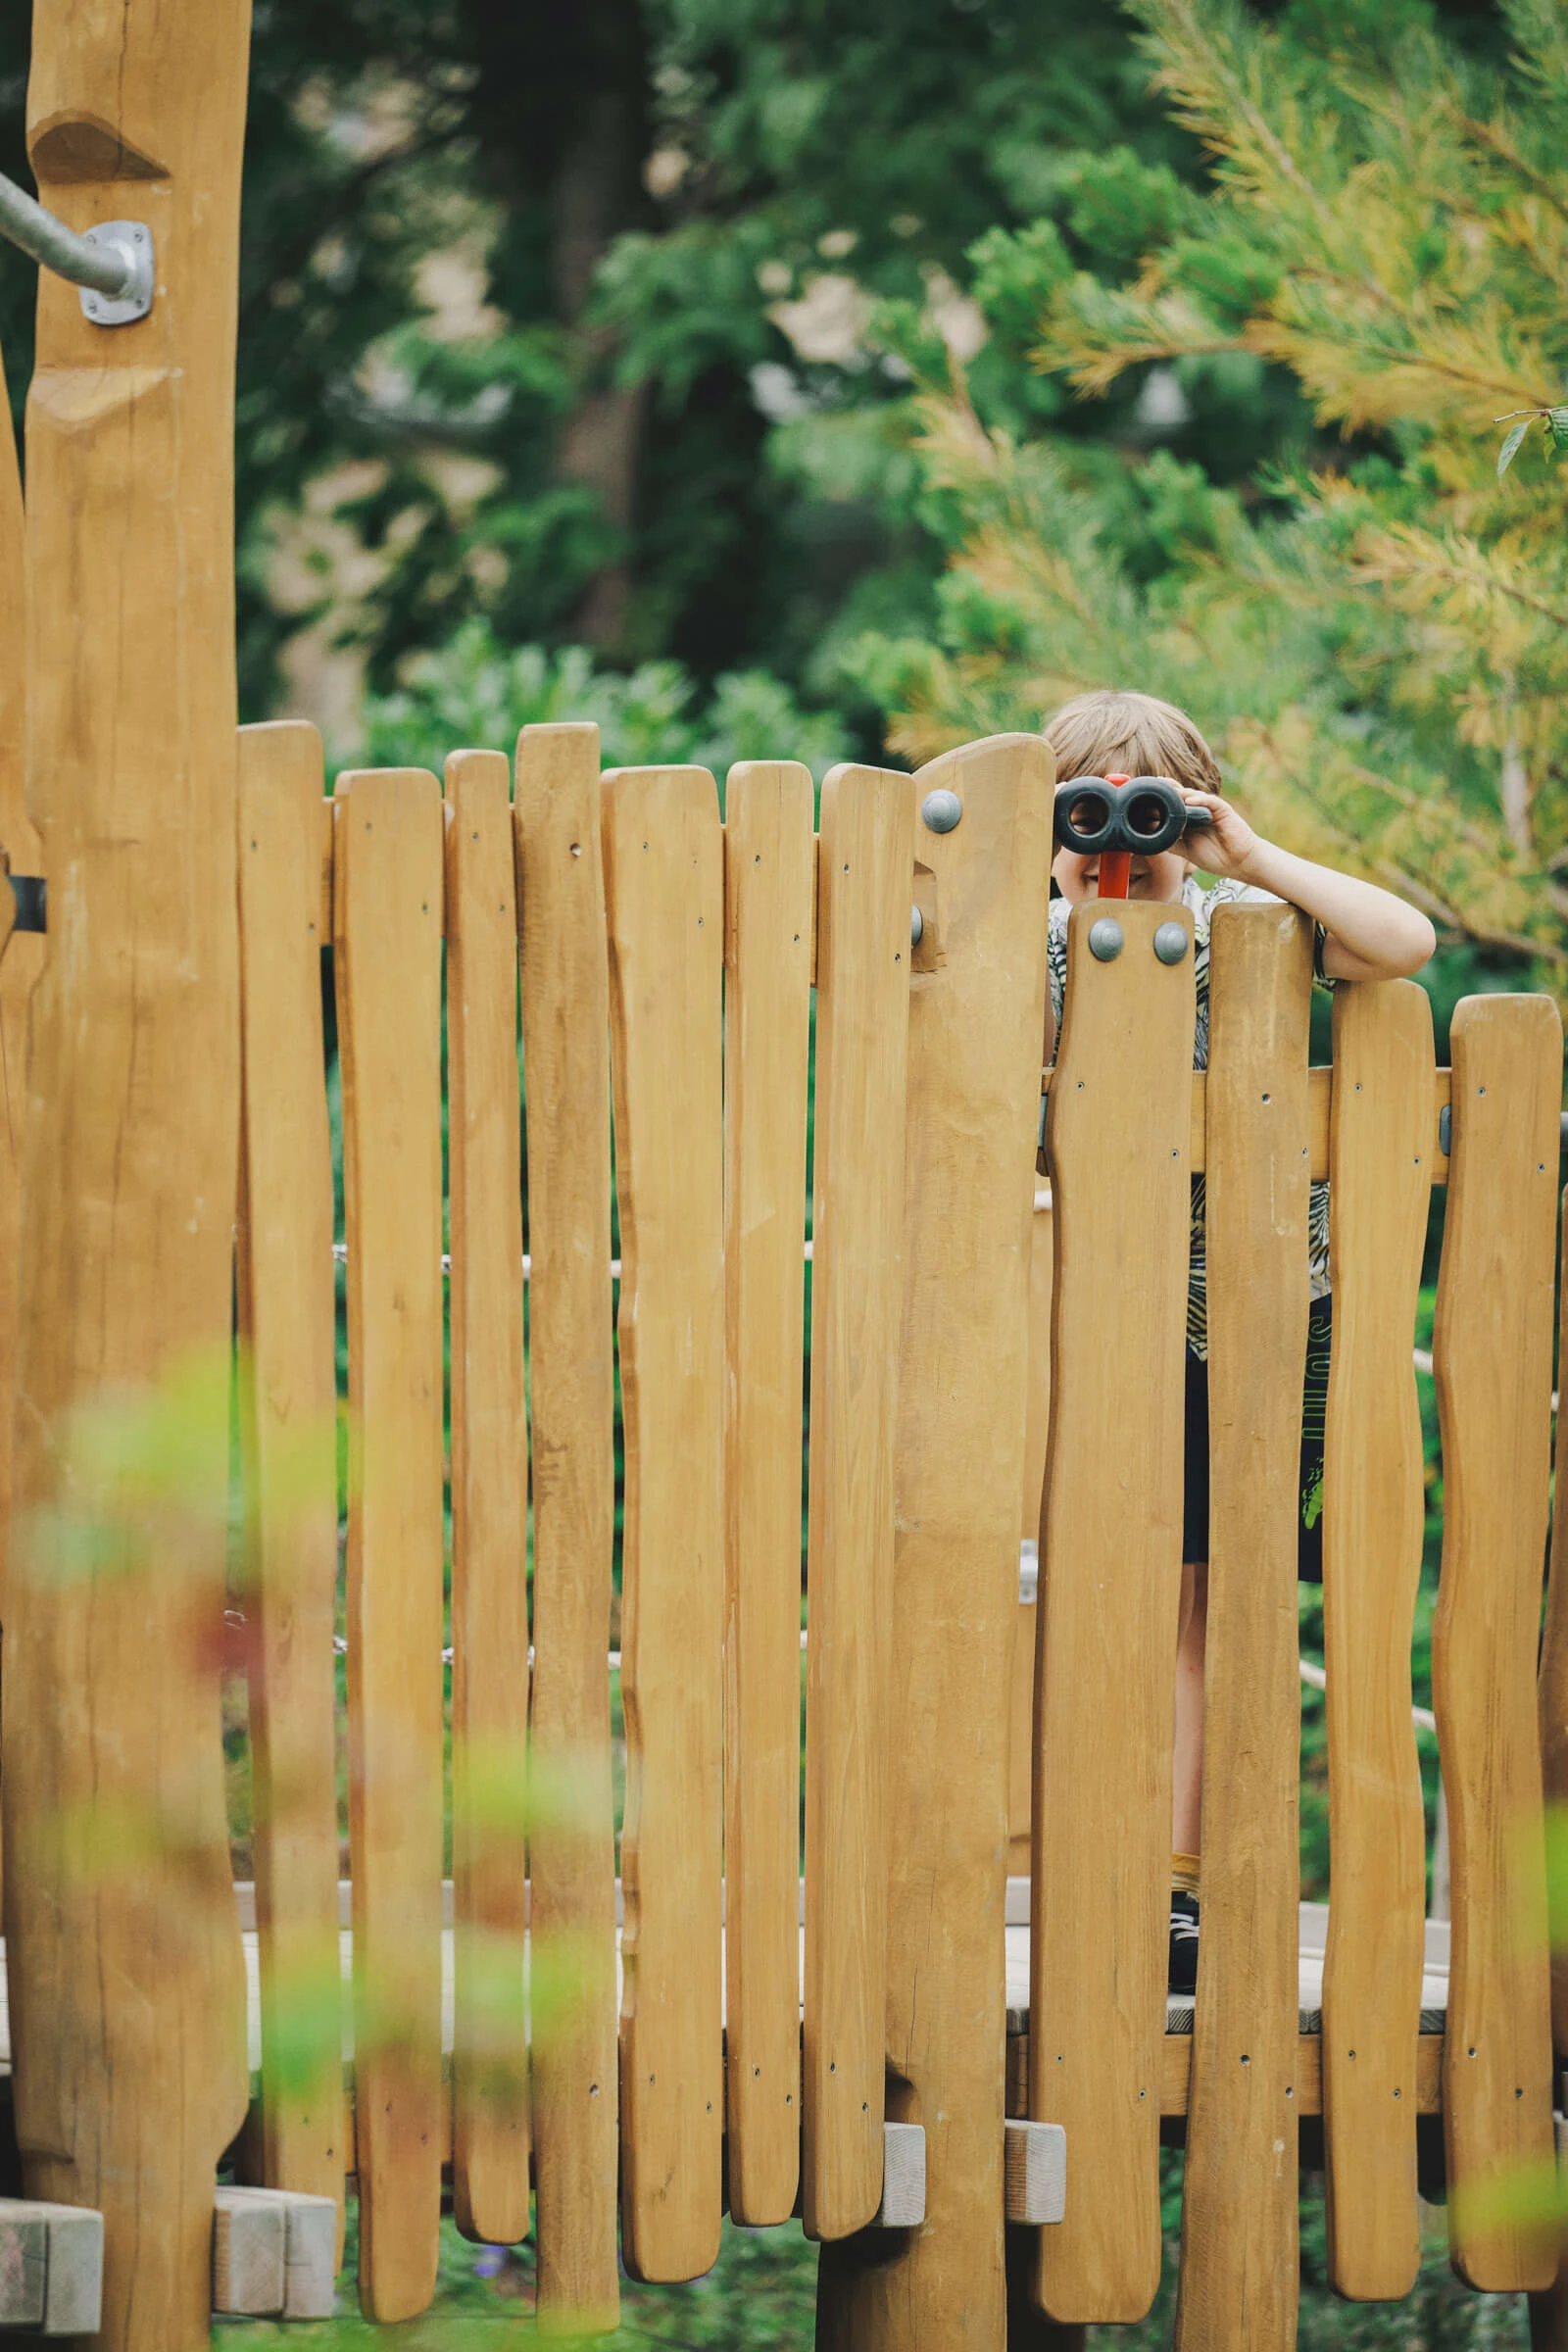 dívka se dívá dalekohledem na dřevěném hřišti